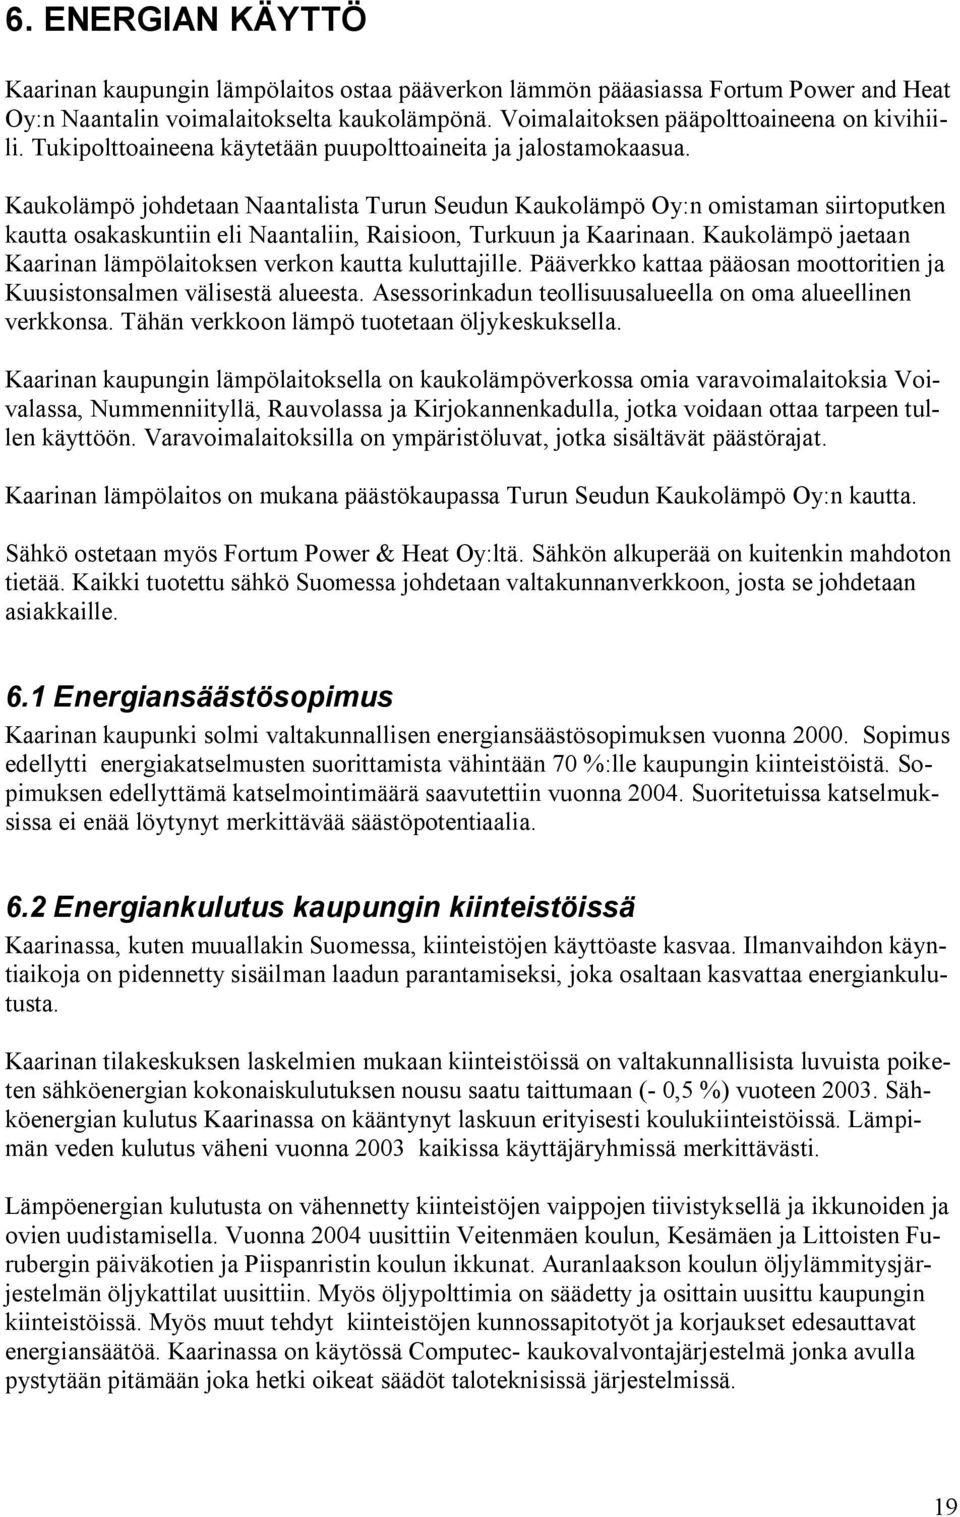 Kaukolämpö johdetaan Naantalista Turun Seudun Kaukolämpö Oy:n omistaman siirtoputken kautta osakaskuntiin eli Naantaliin, Raisioon, Turkuun ja Kaarinaan.